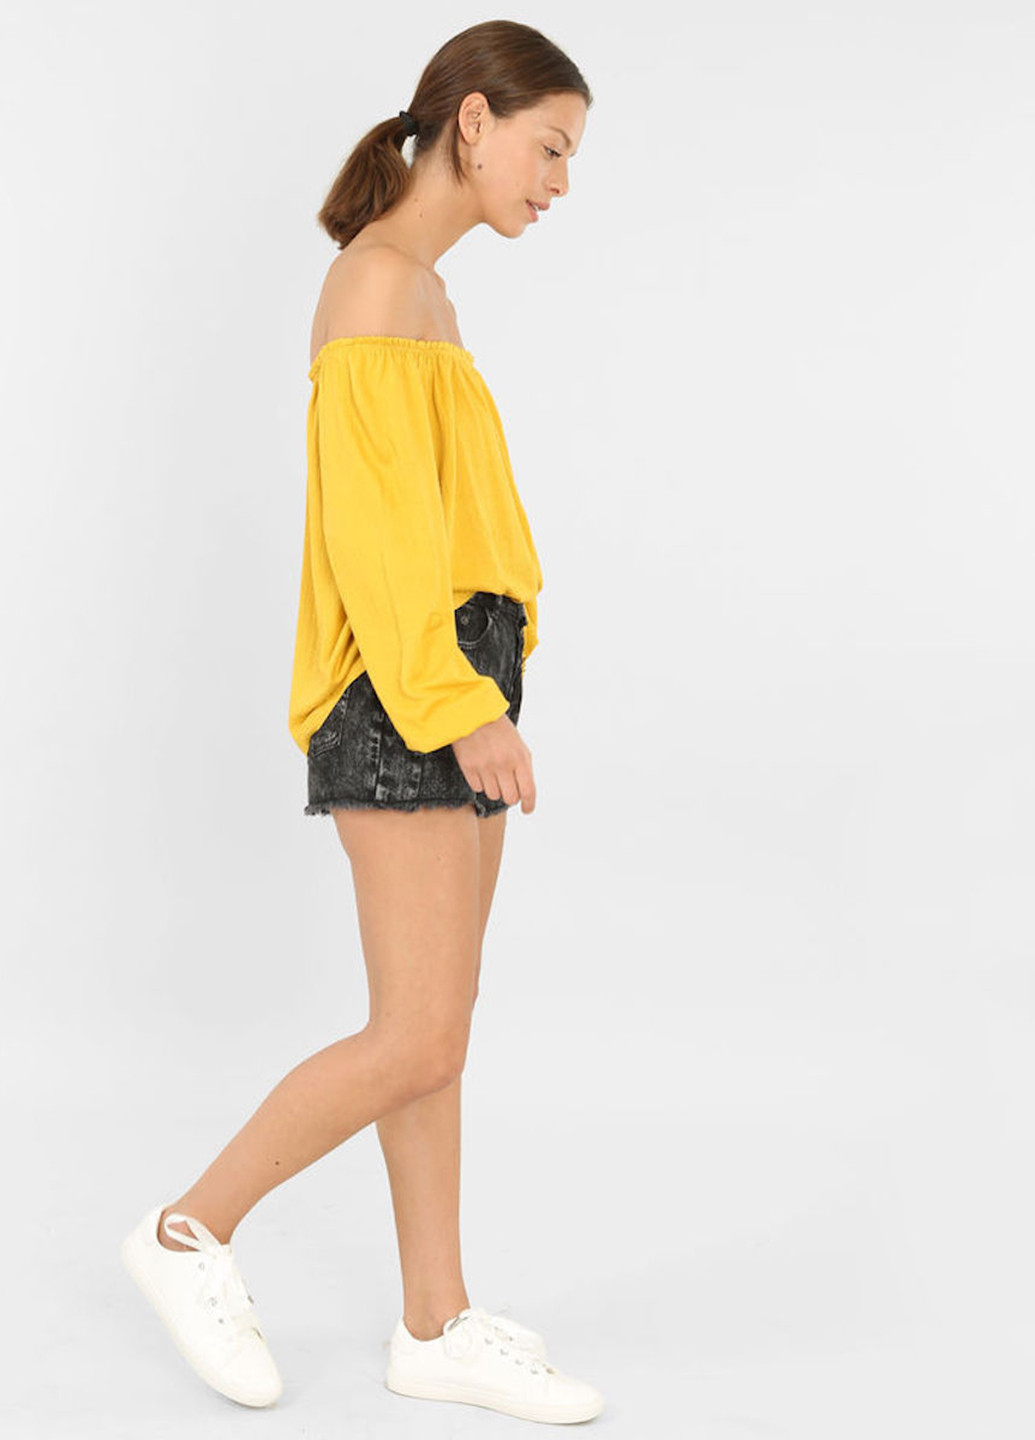 Жовта демісезонна блуза Pimkie